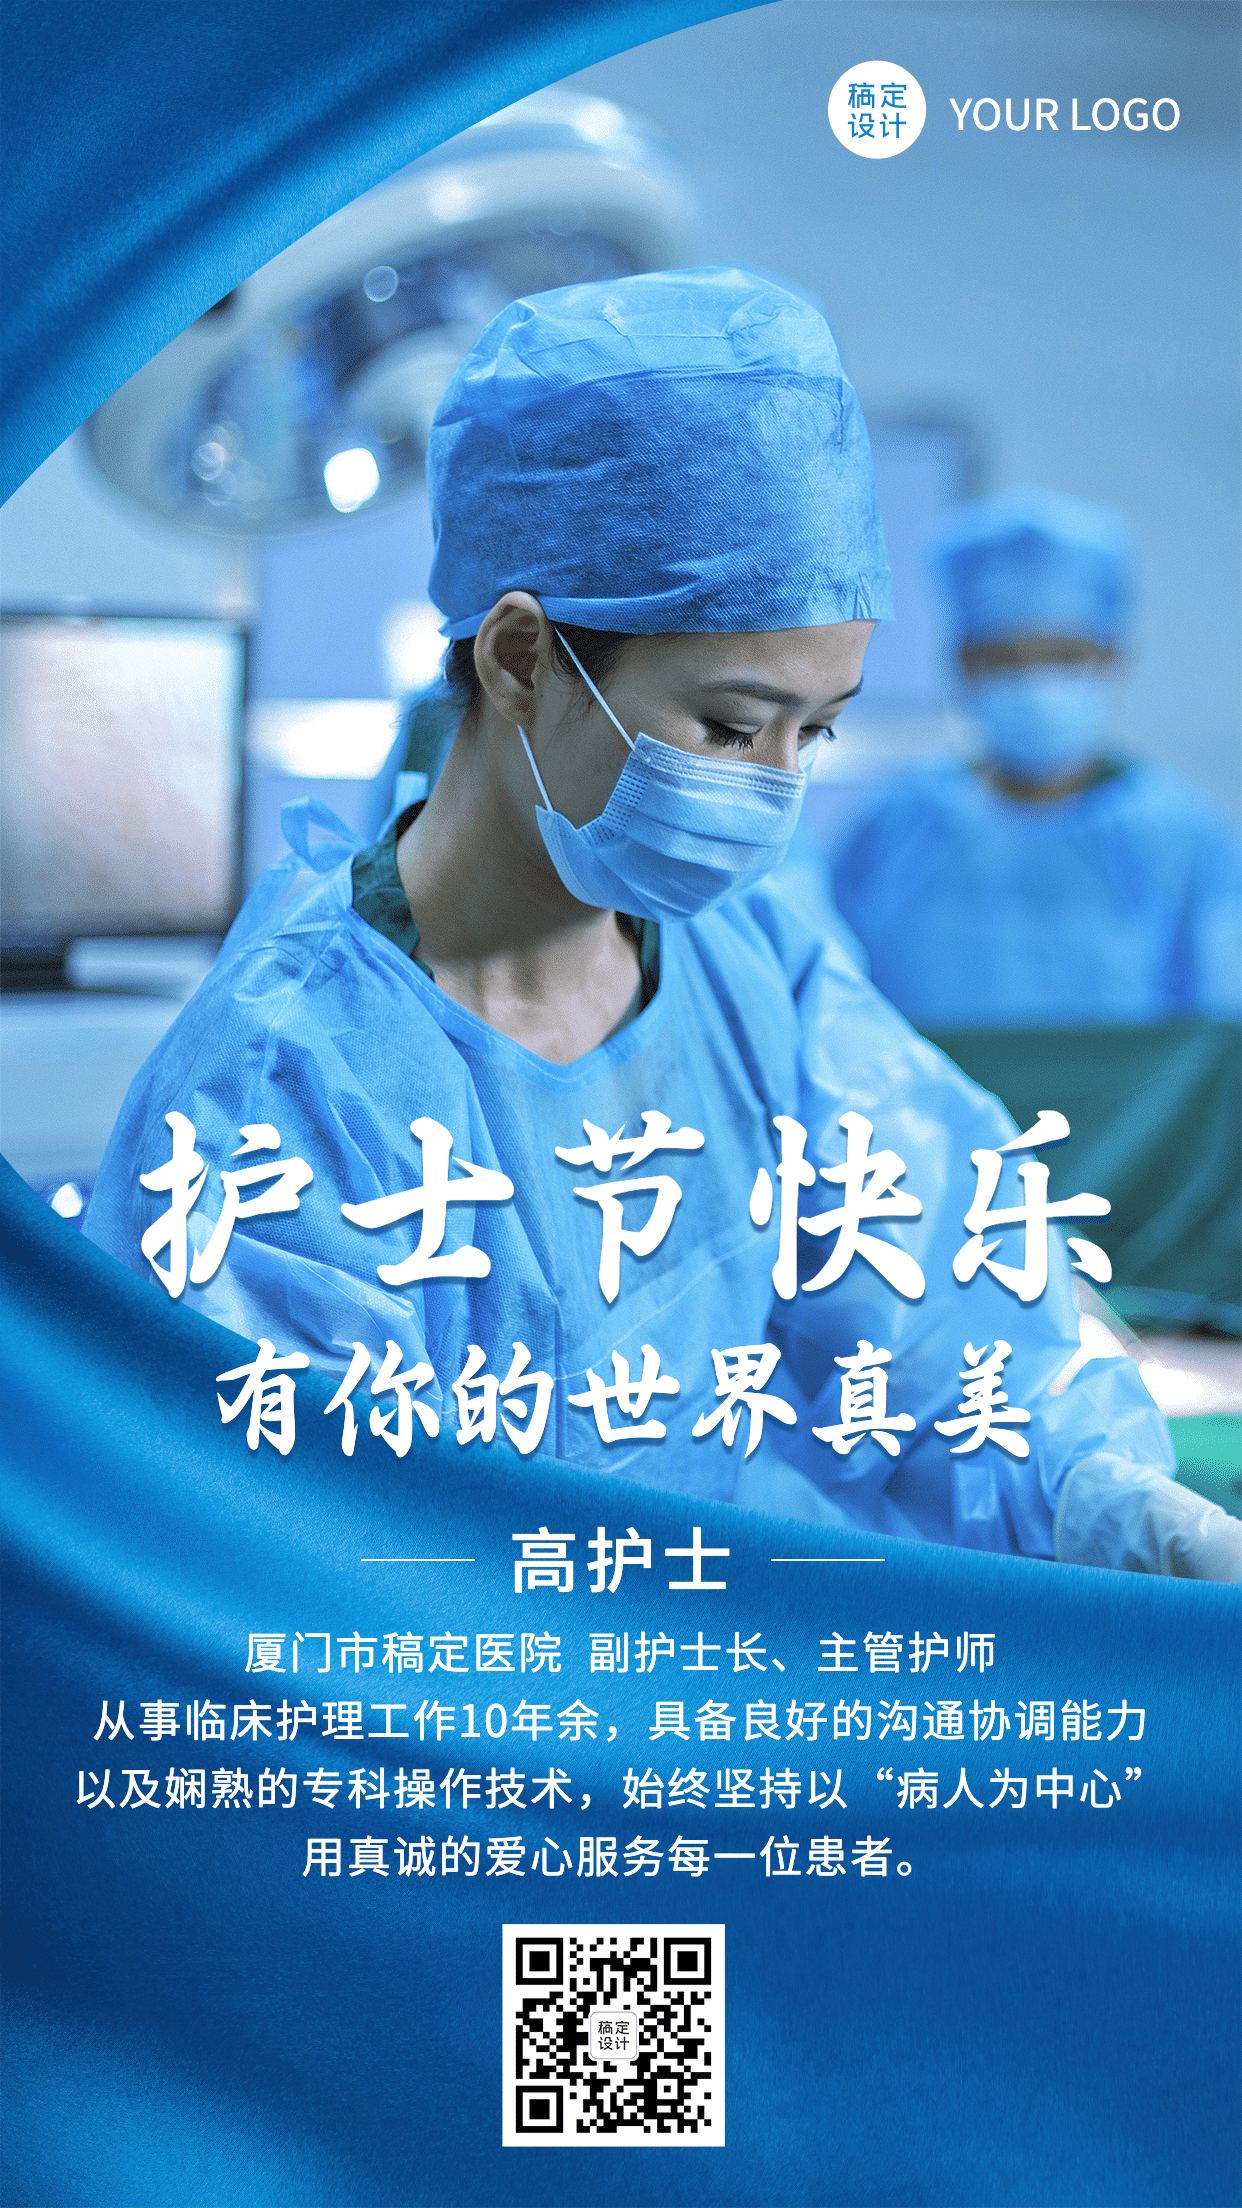 国际护士节个人形象实景竖版海报预览效果